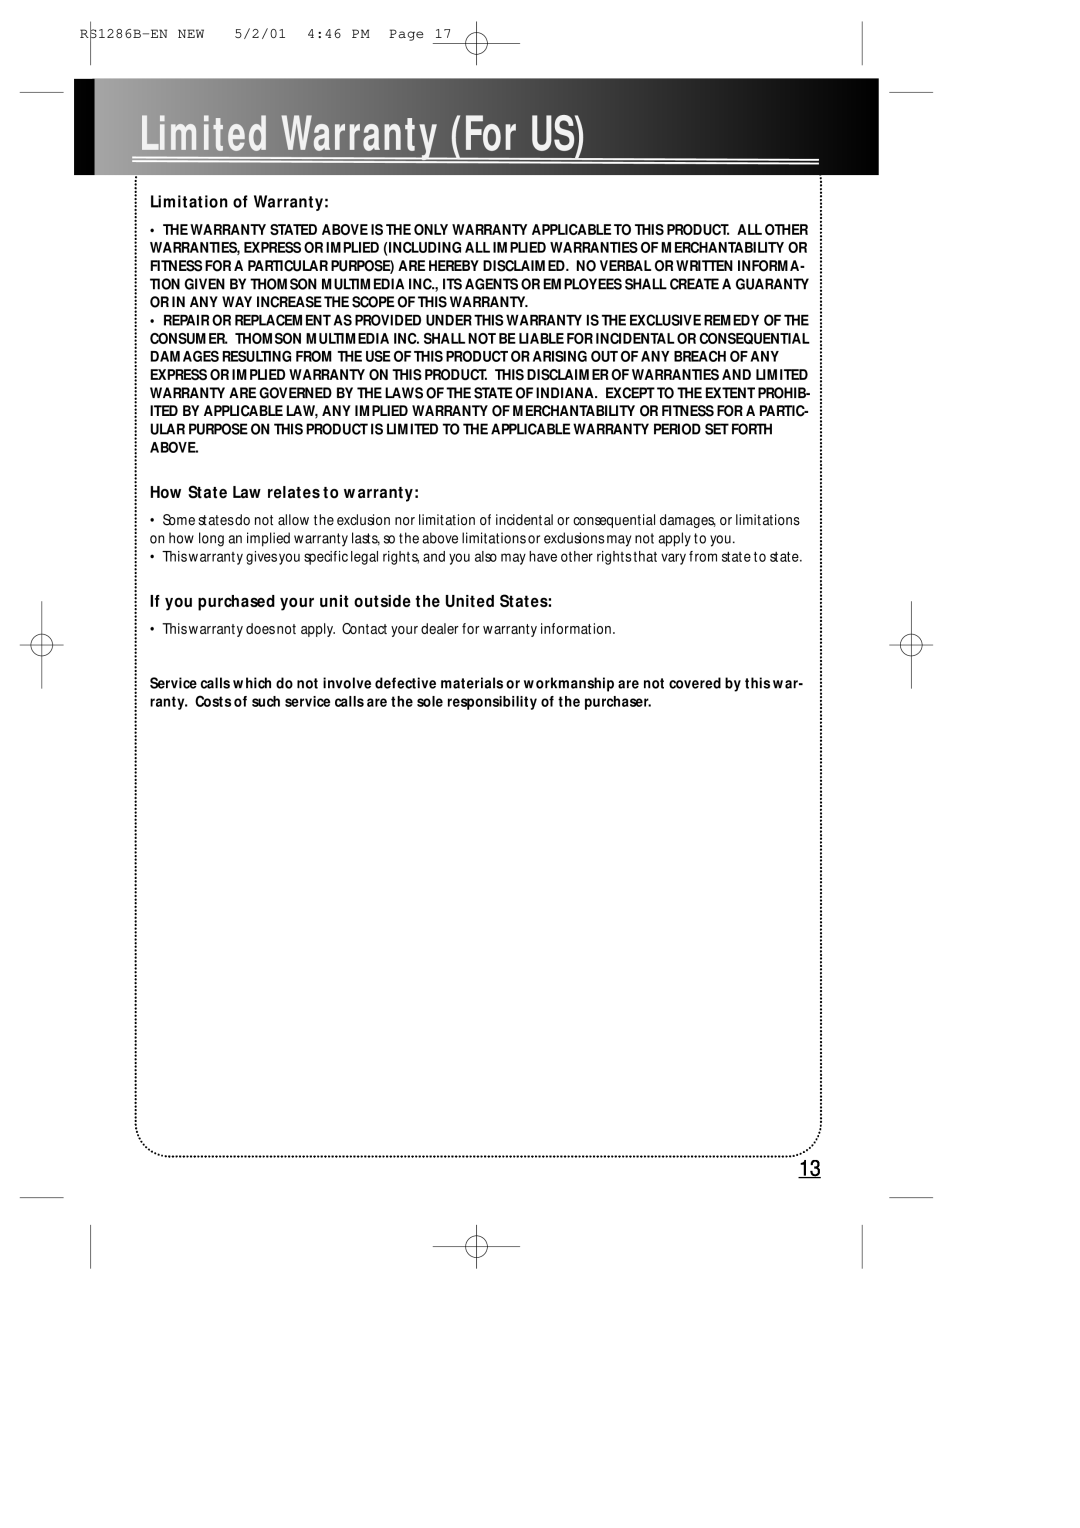 RCA RS1286B manual LimitedWarrantyForUS, Limitation of Warranty, How State Law relates to warranty 